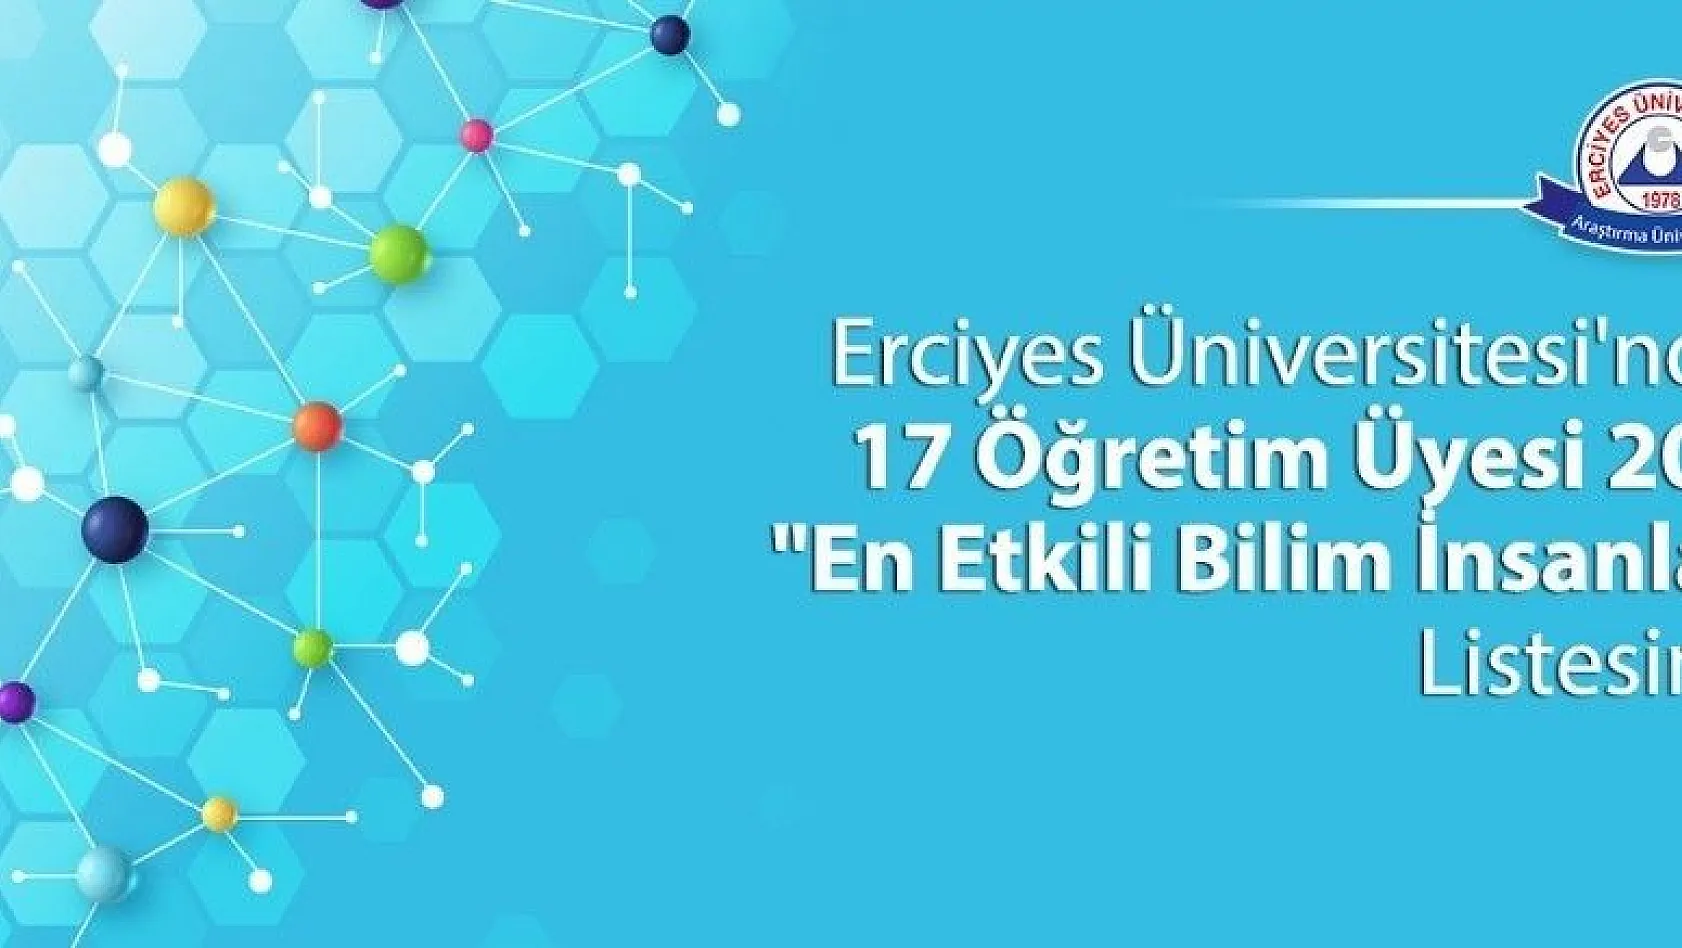 ERÜ'den 17 Öğretim Üyesi 2019 'En Etkili Bilim İnsanları' Listesinde Yer Aldı
